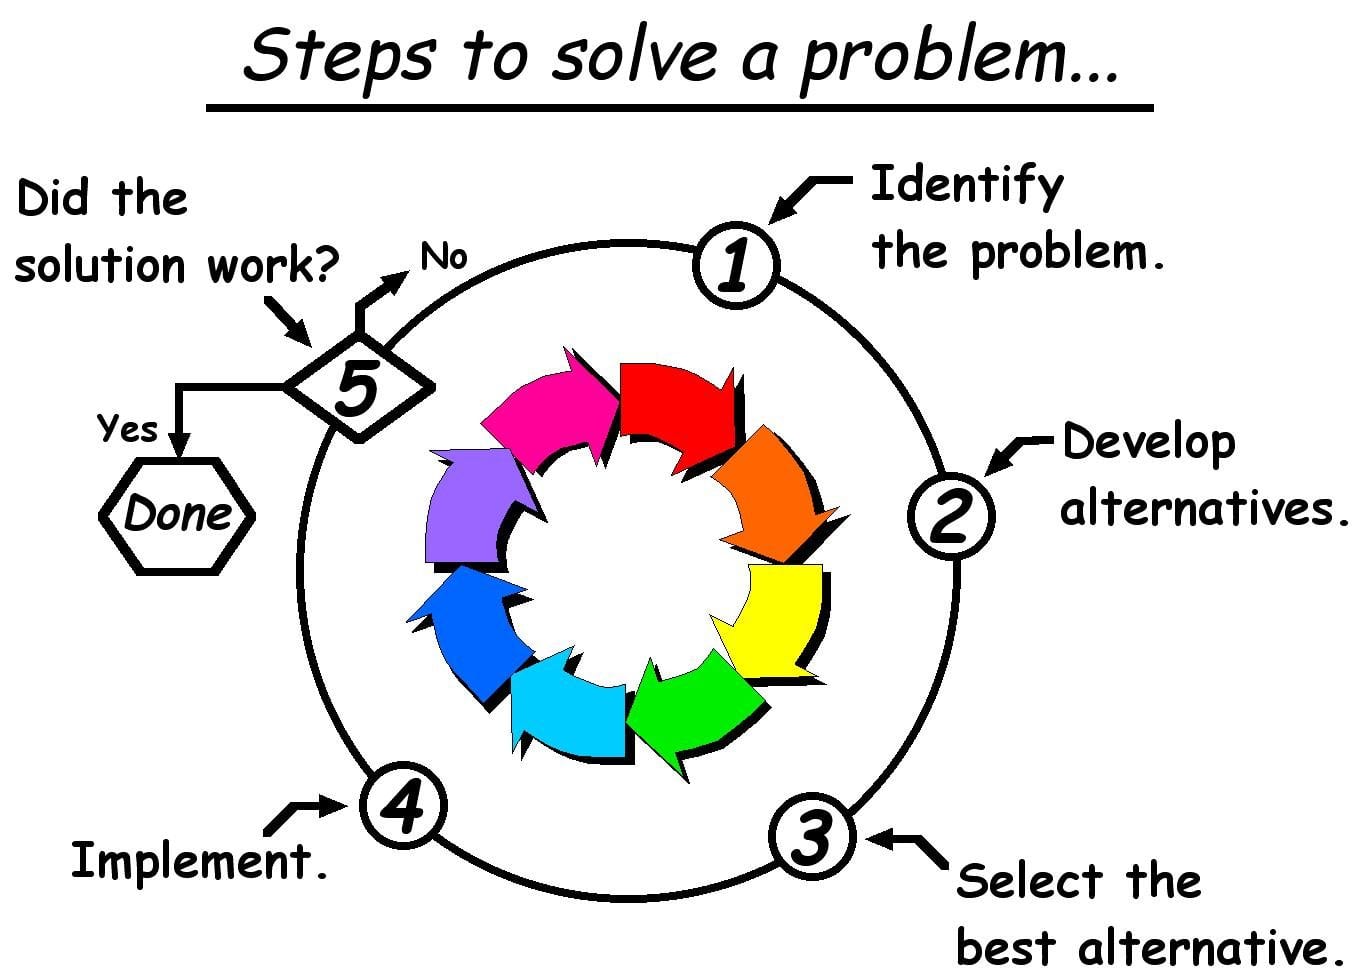 Come segnalare un errore per poter risolvere velocemente il problema occorso?